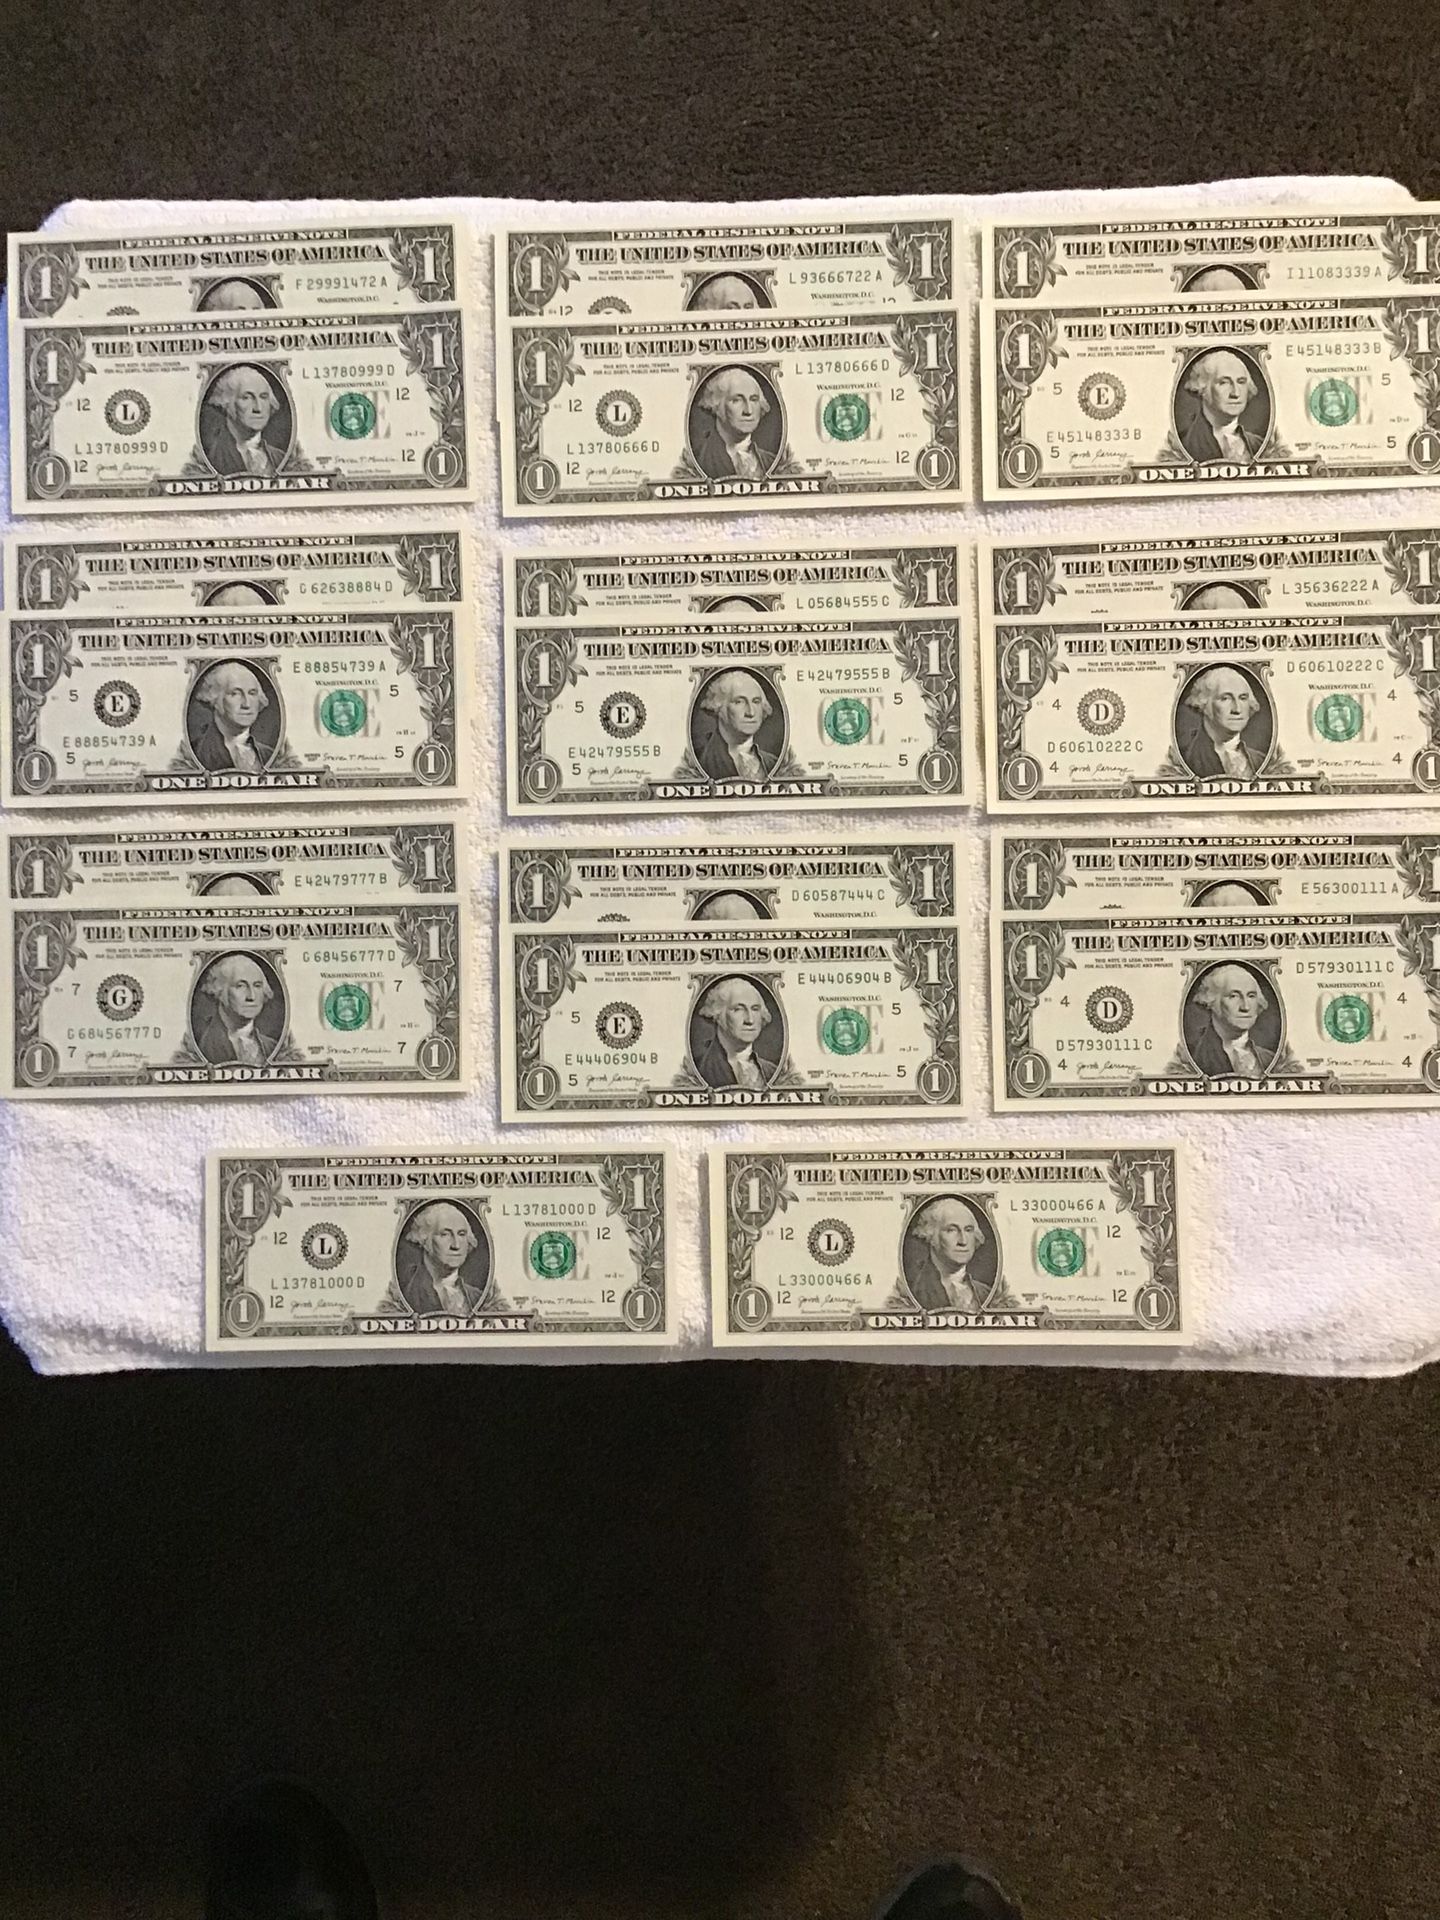 2017 Fancy One Dollar Bills 0 Through 9